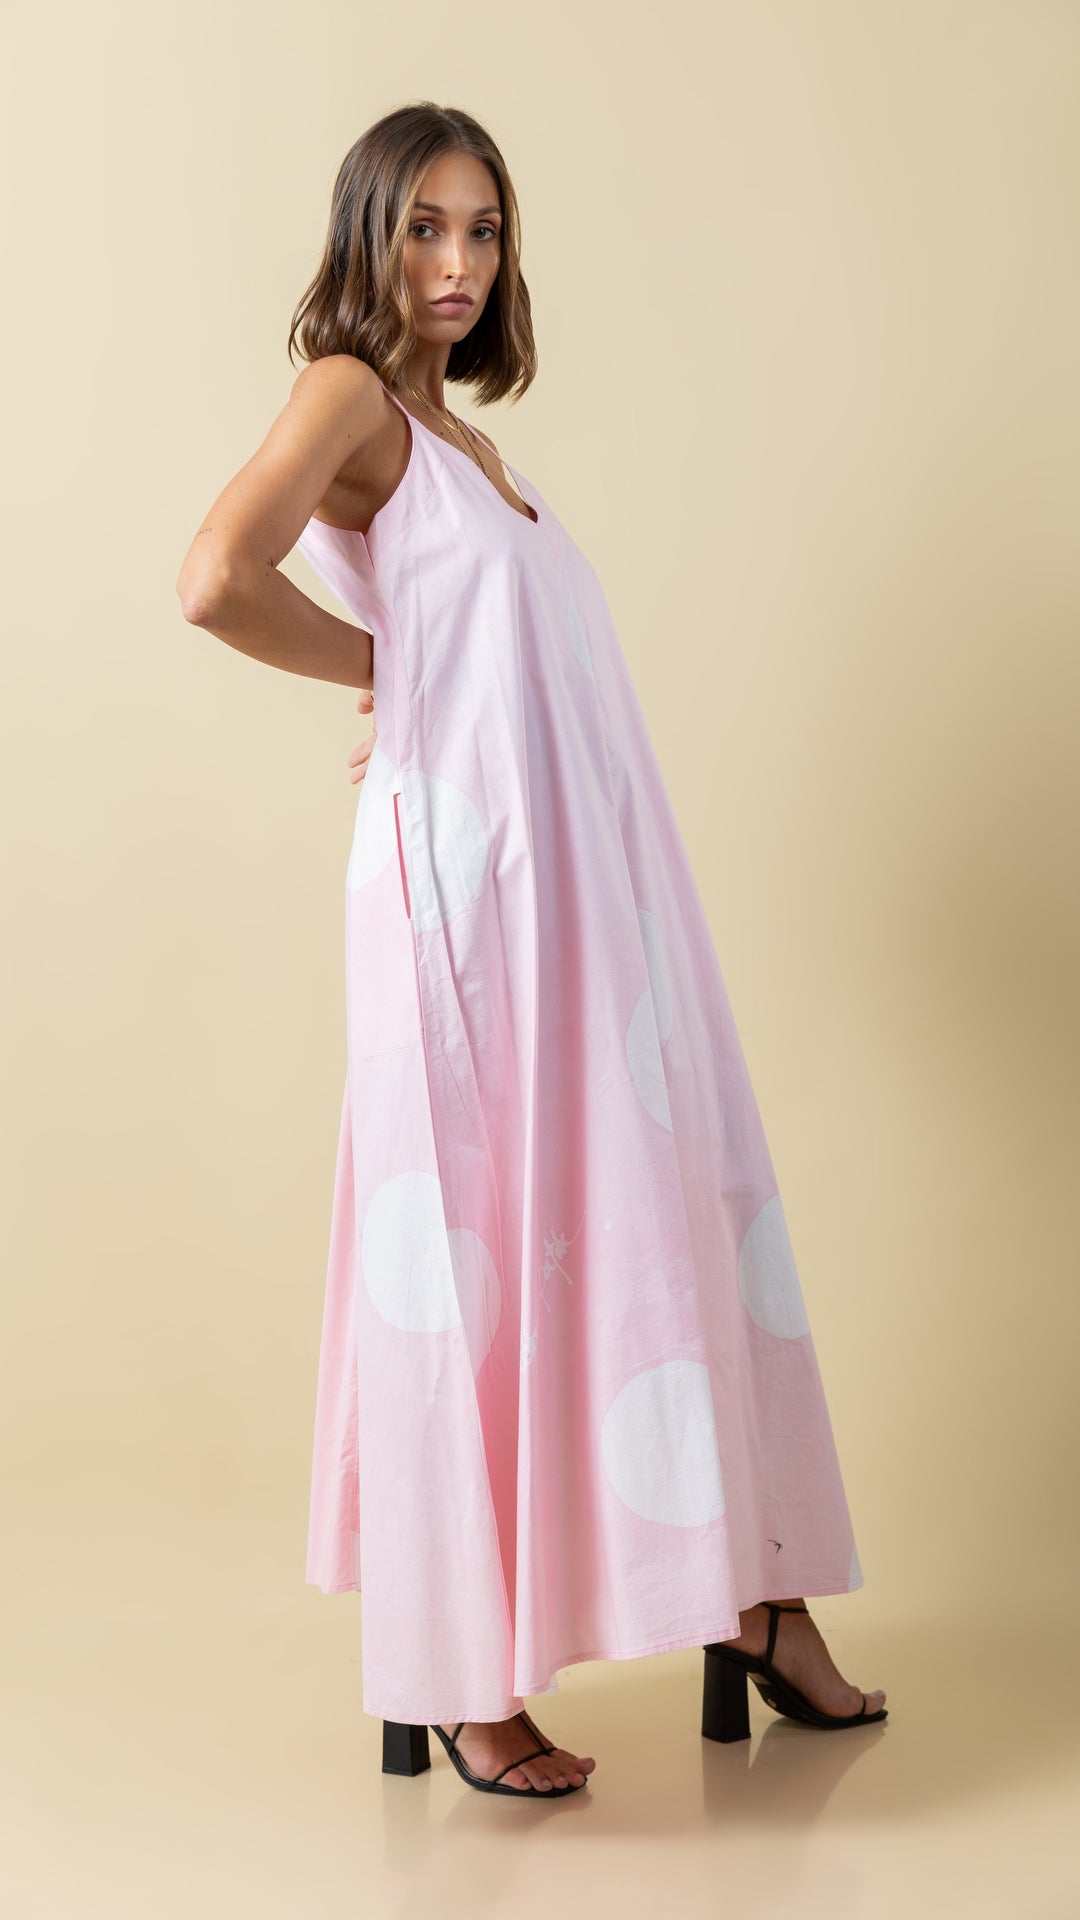 Pink Polka Dot Perfection: Versatile Long Strap Dress